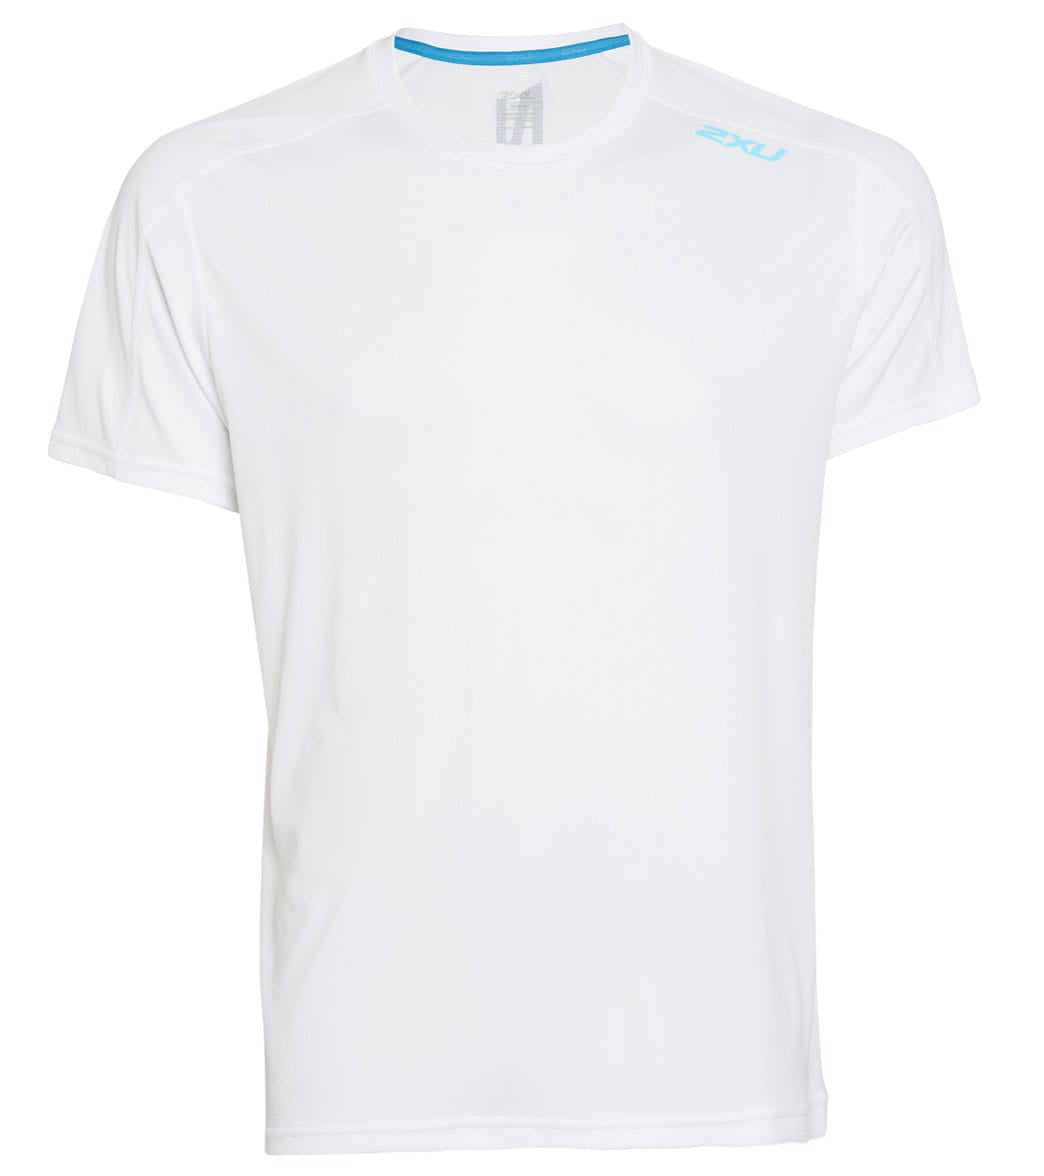 2Xu Men's Xvent G2 Short Sleeve Tee Shirt - White/True Blue Reflective Medium Polyester - Swimoutlet.com